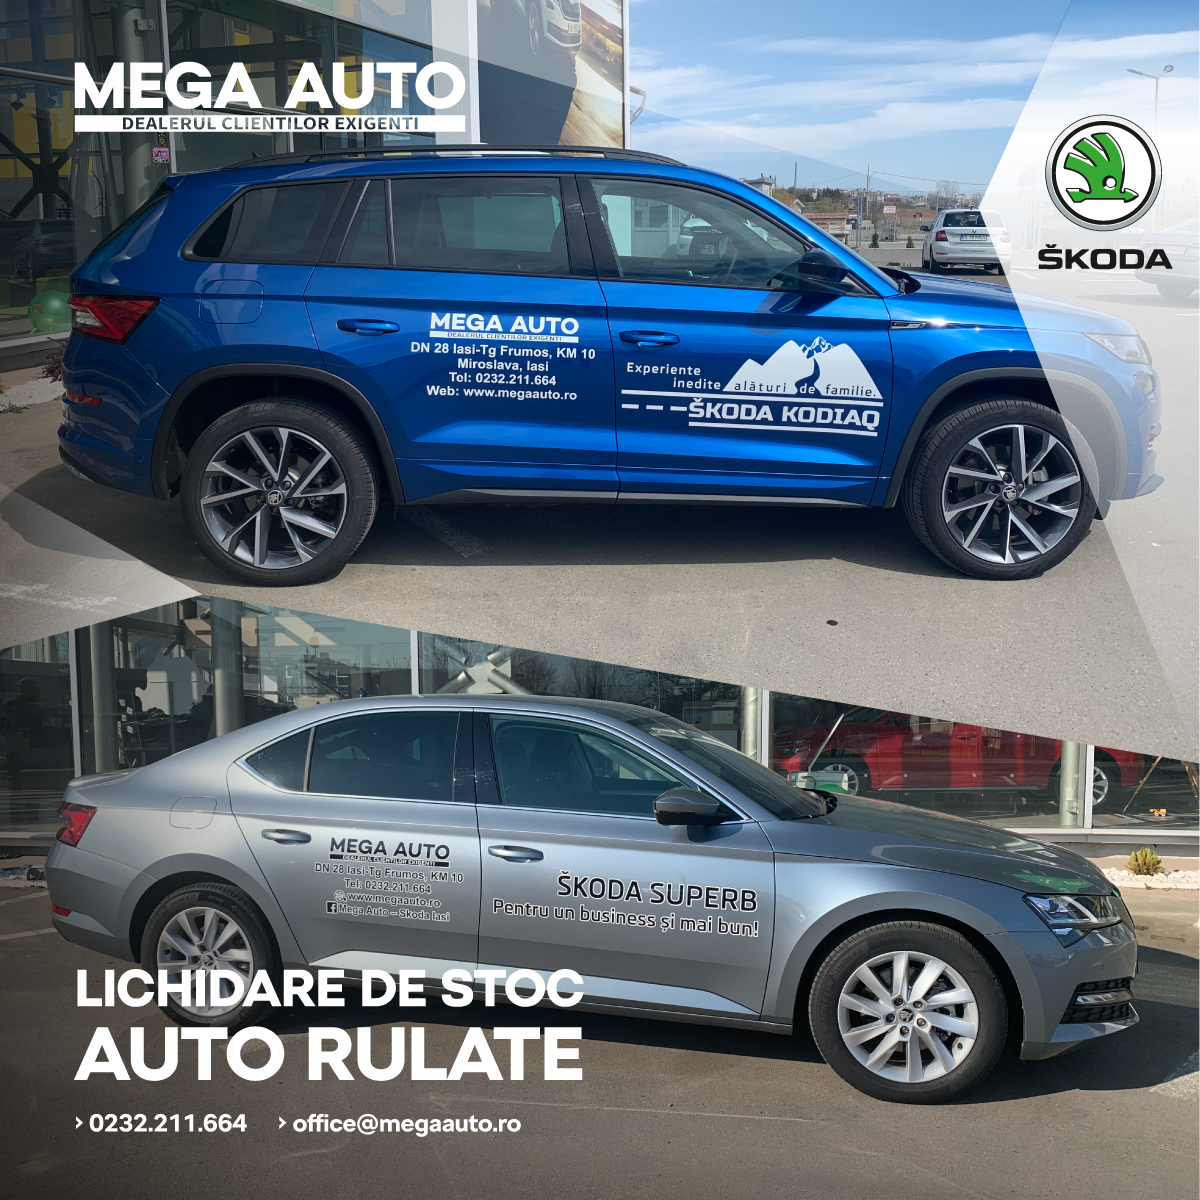 Lichidare de stoc Auto Rulate la Mega Auto – ŠKODA Iași